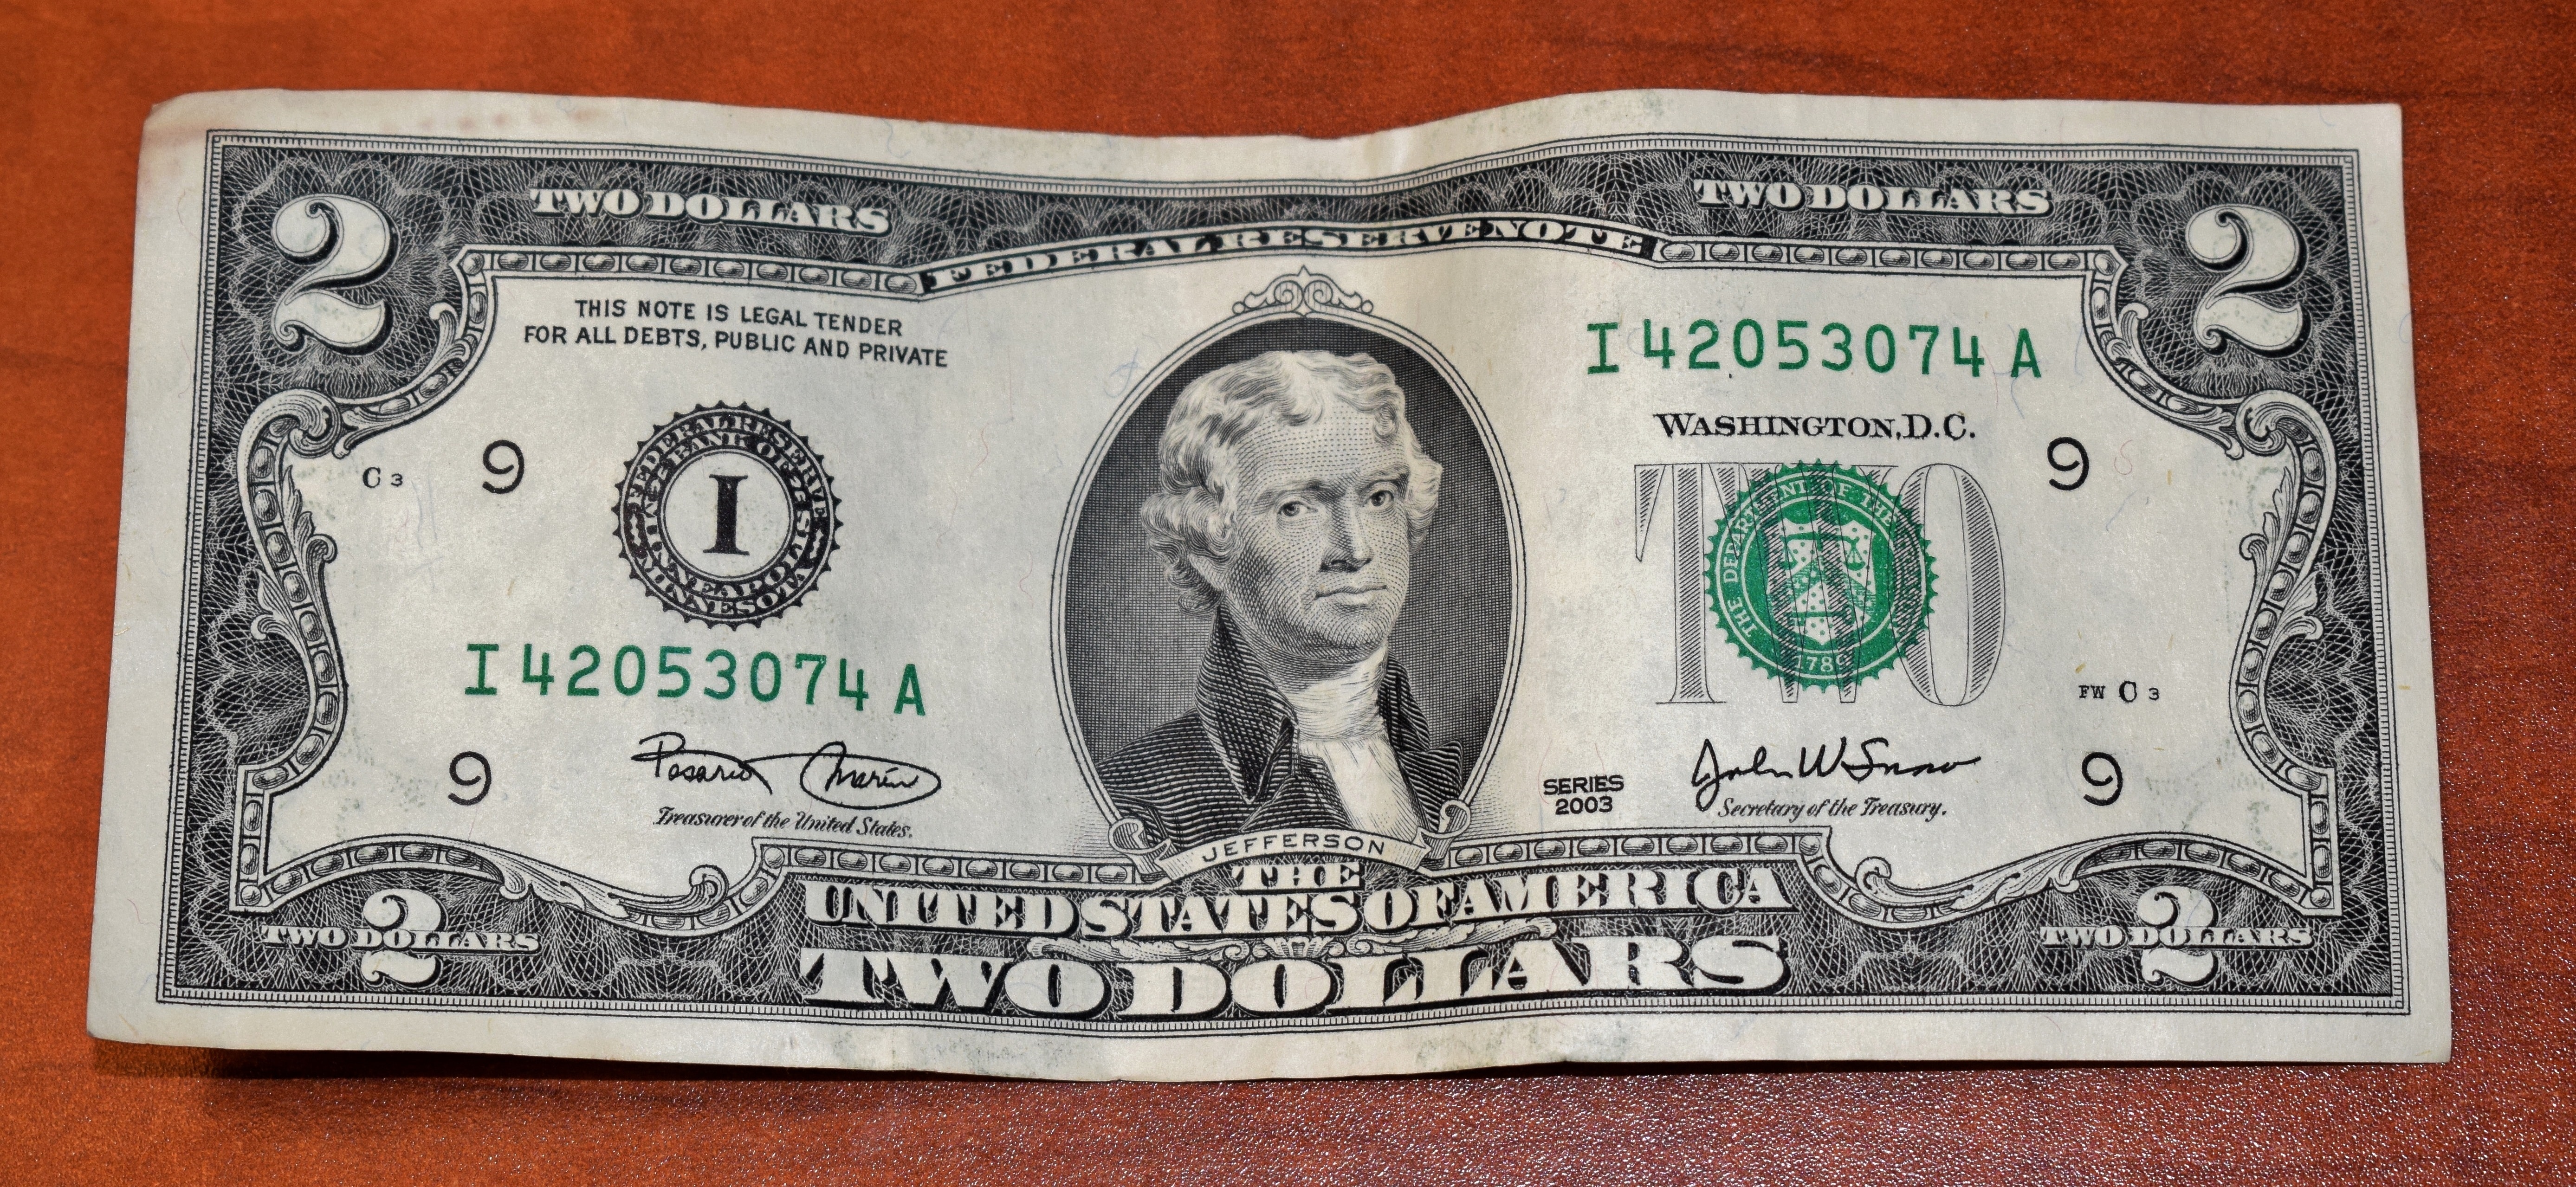 Dollar Bill Preview - $2 Bill , HD Wallpaper & Backgrounds